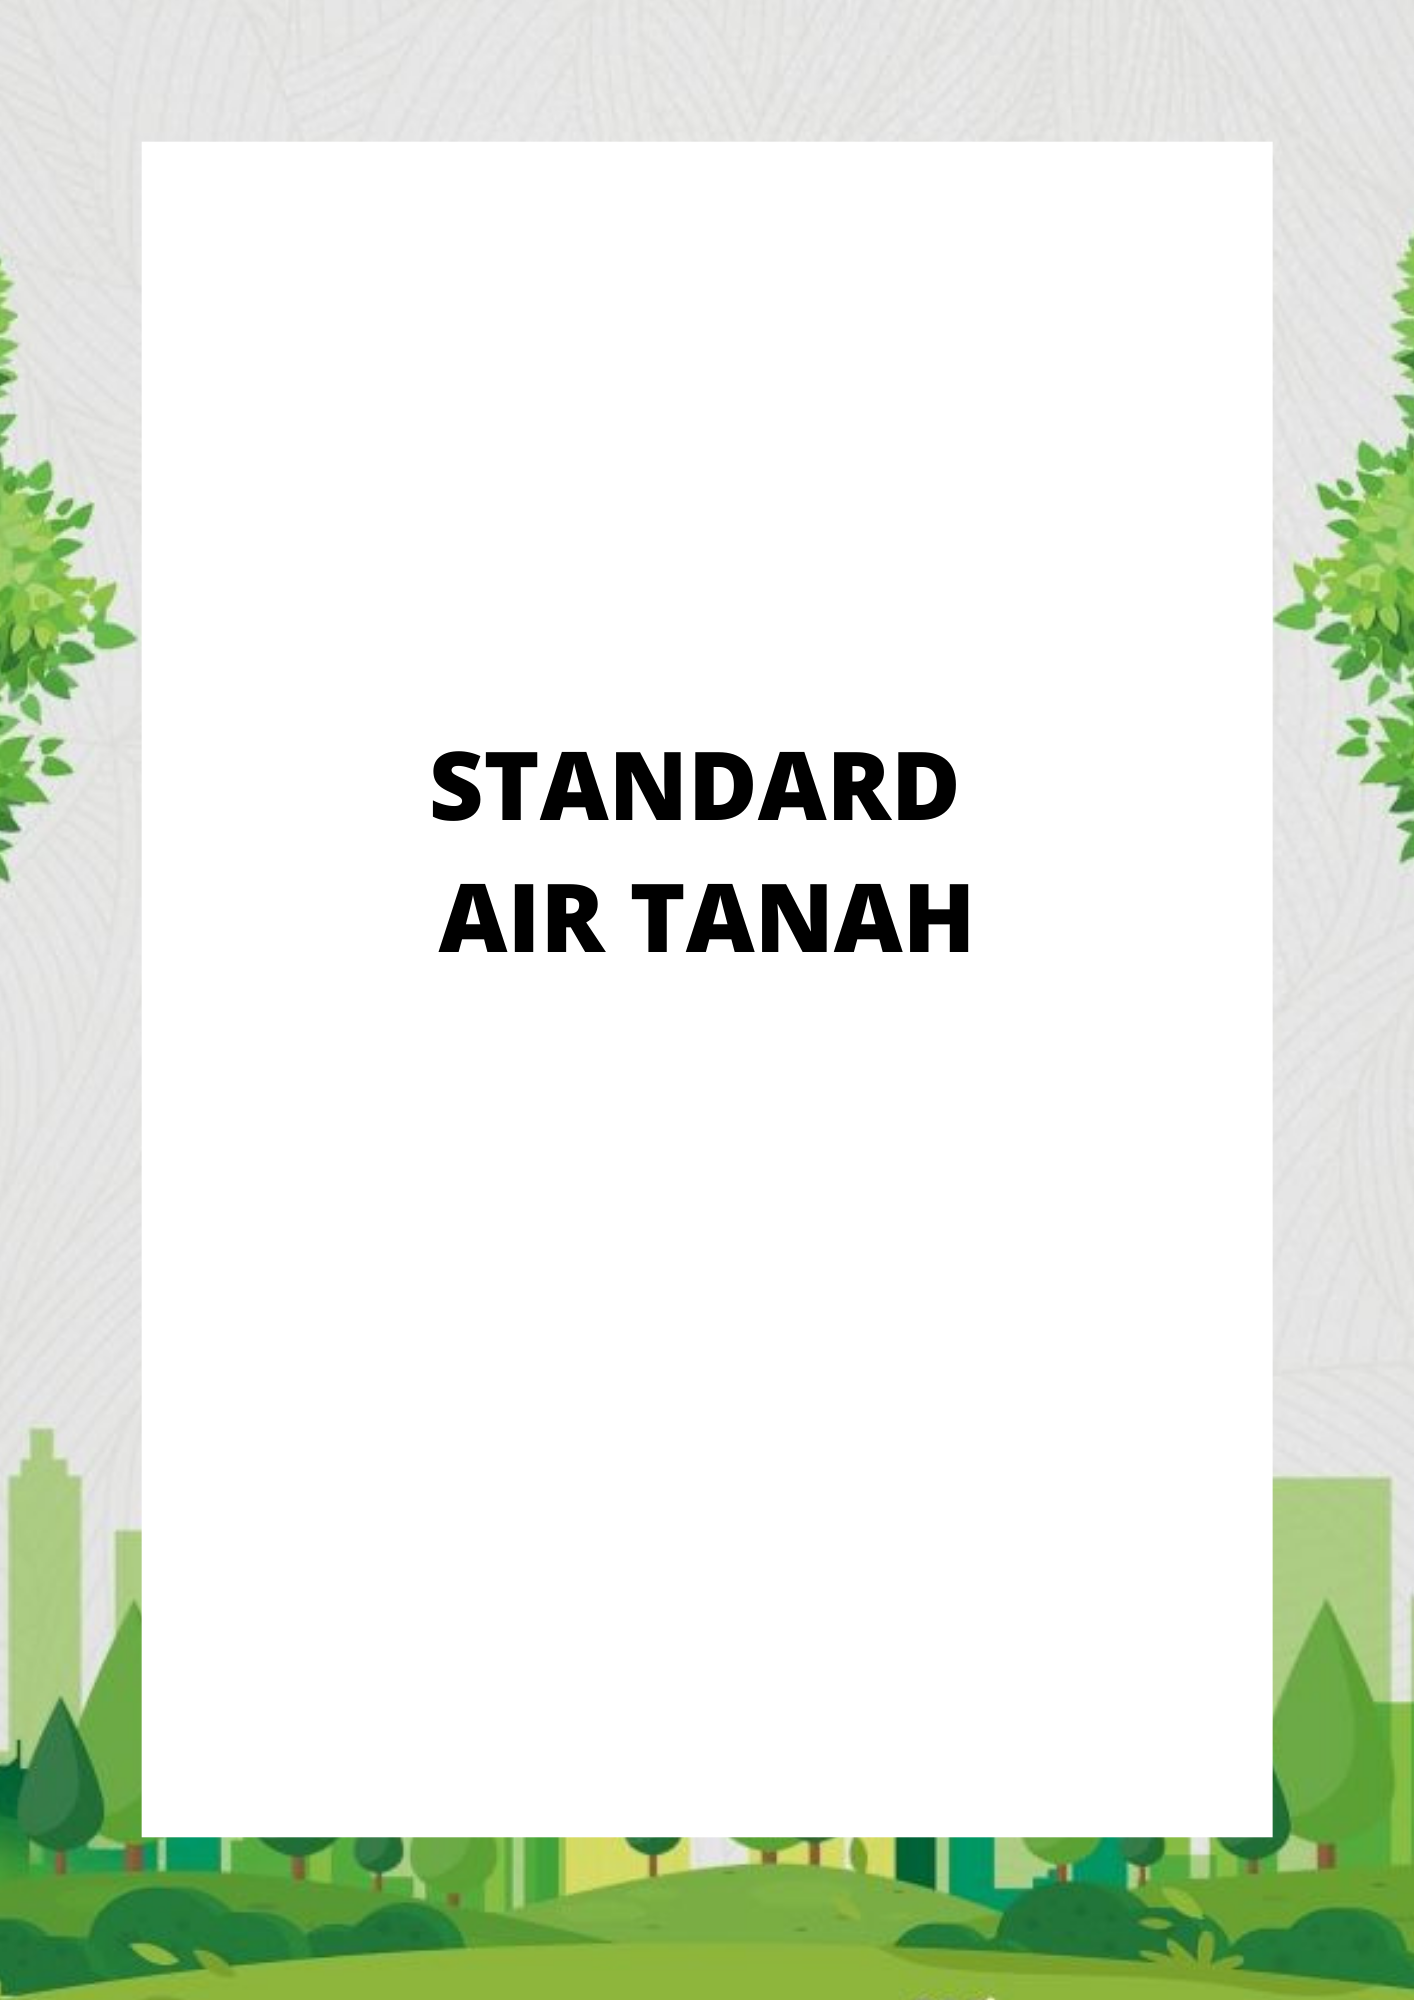 STANDARD AIR TANAH